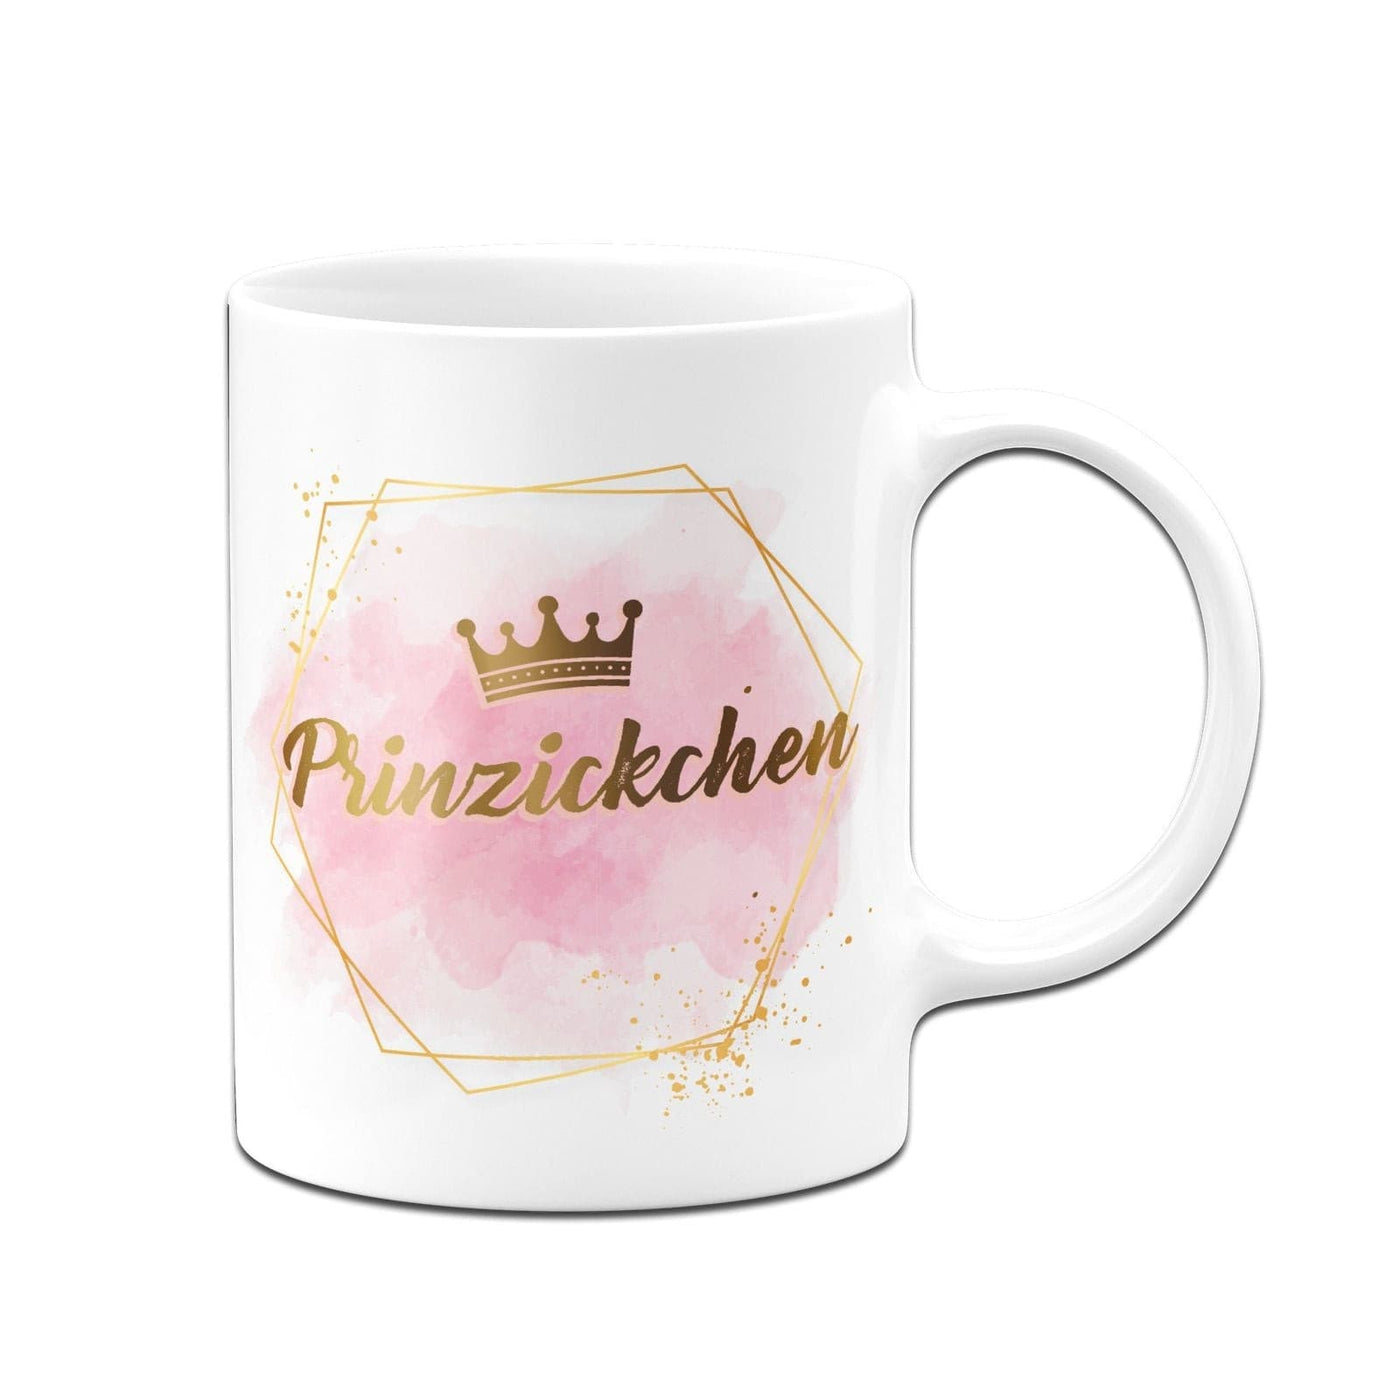 Bild: Tasse - Prinzickchen - Golddesign Geschenkidee